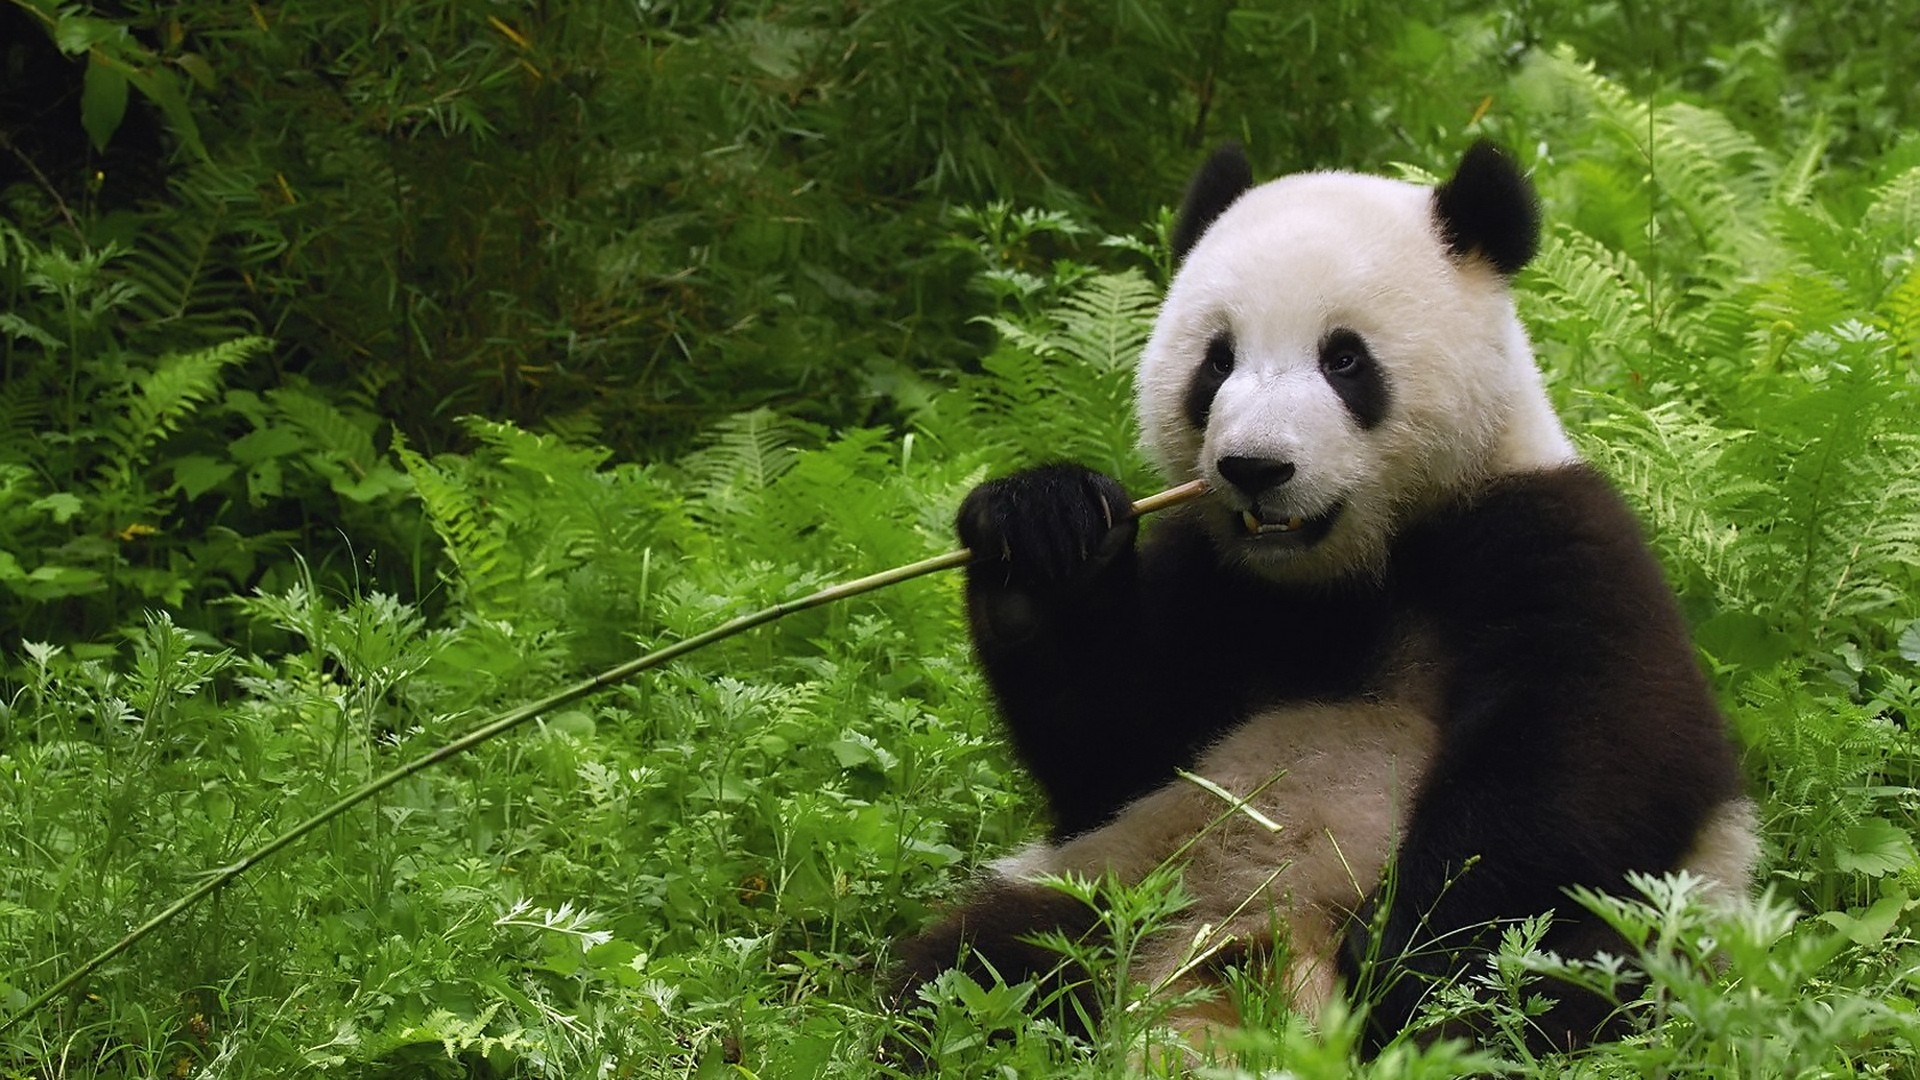 Free photo A panda eats bamboo among the green leaves